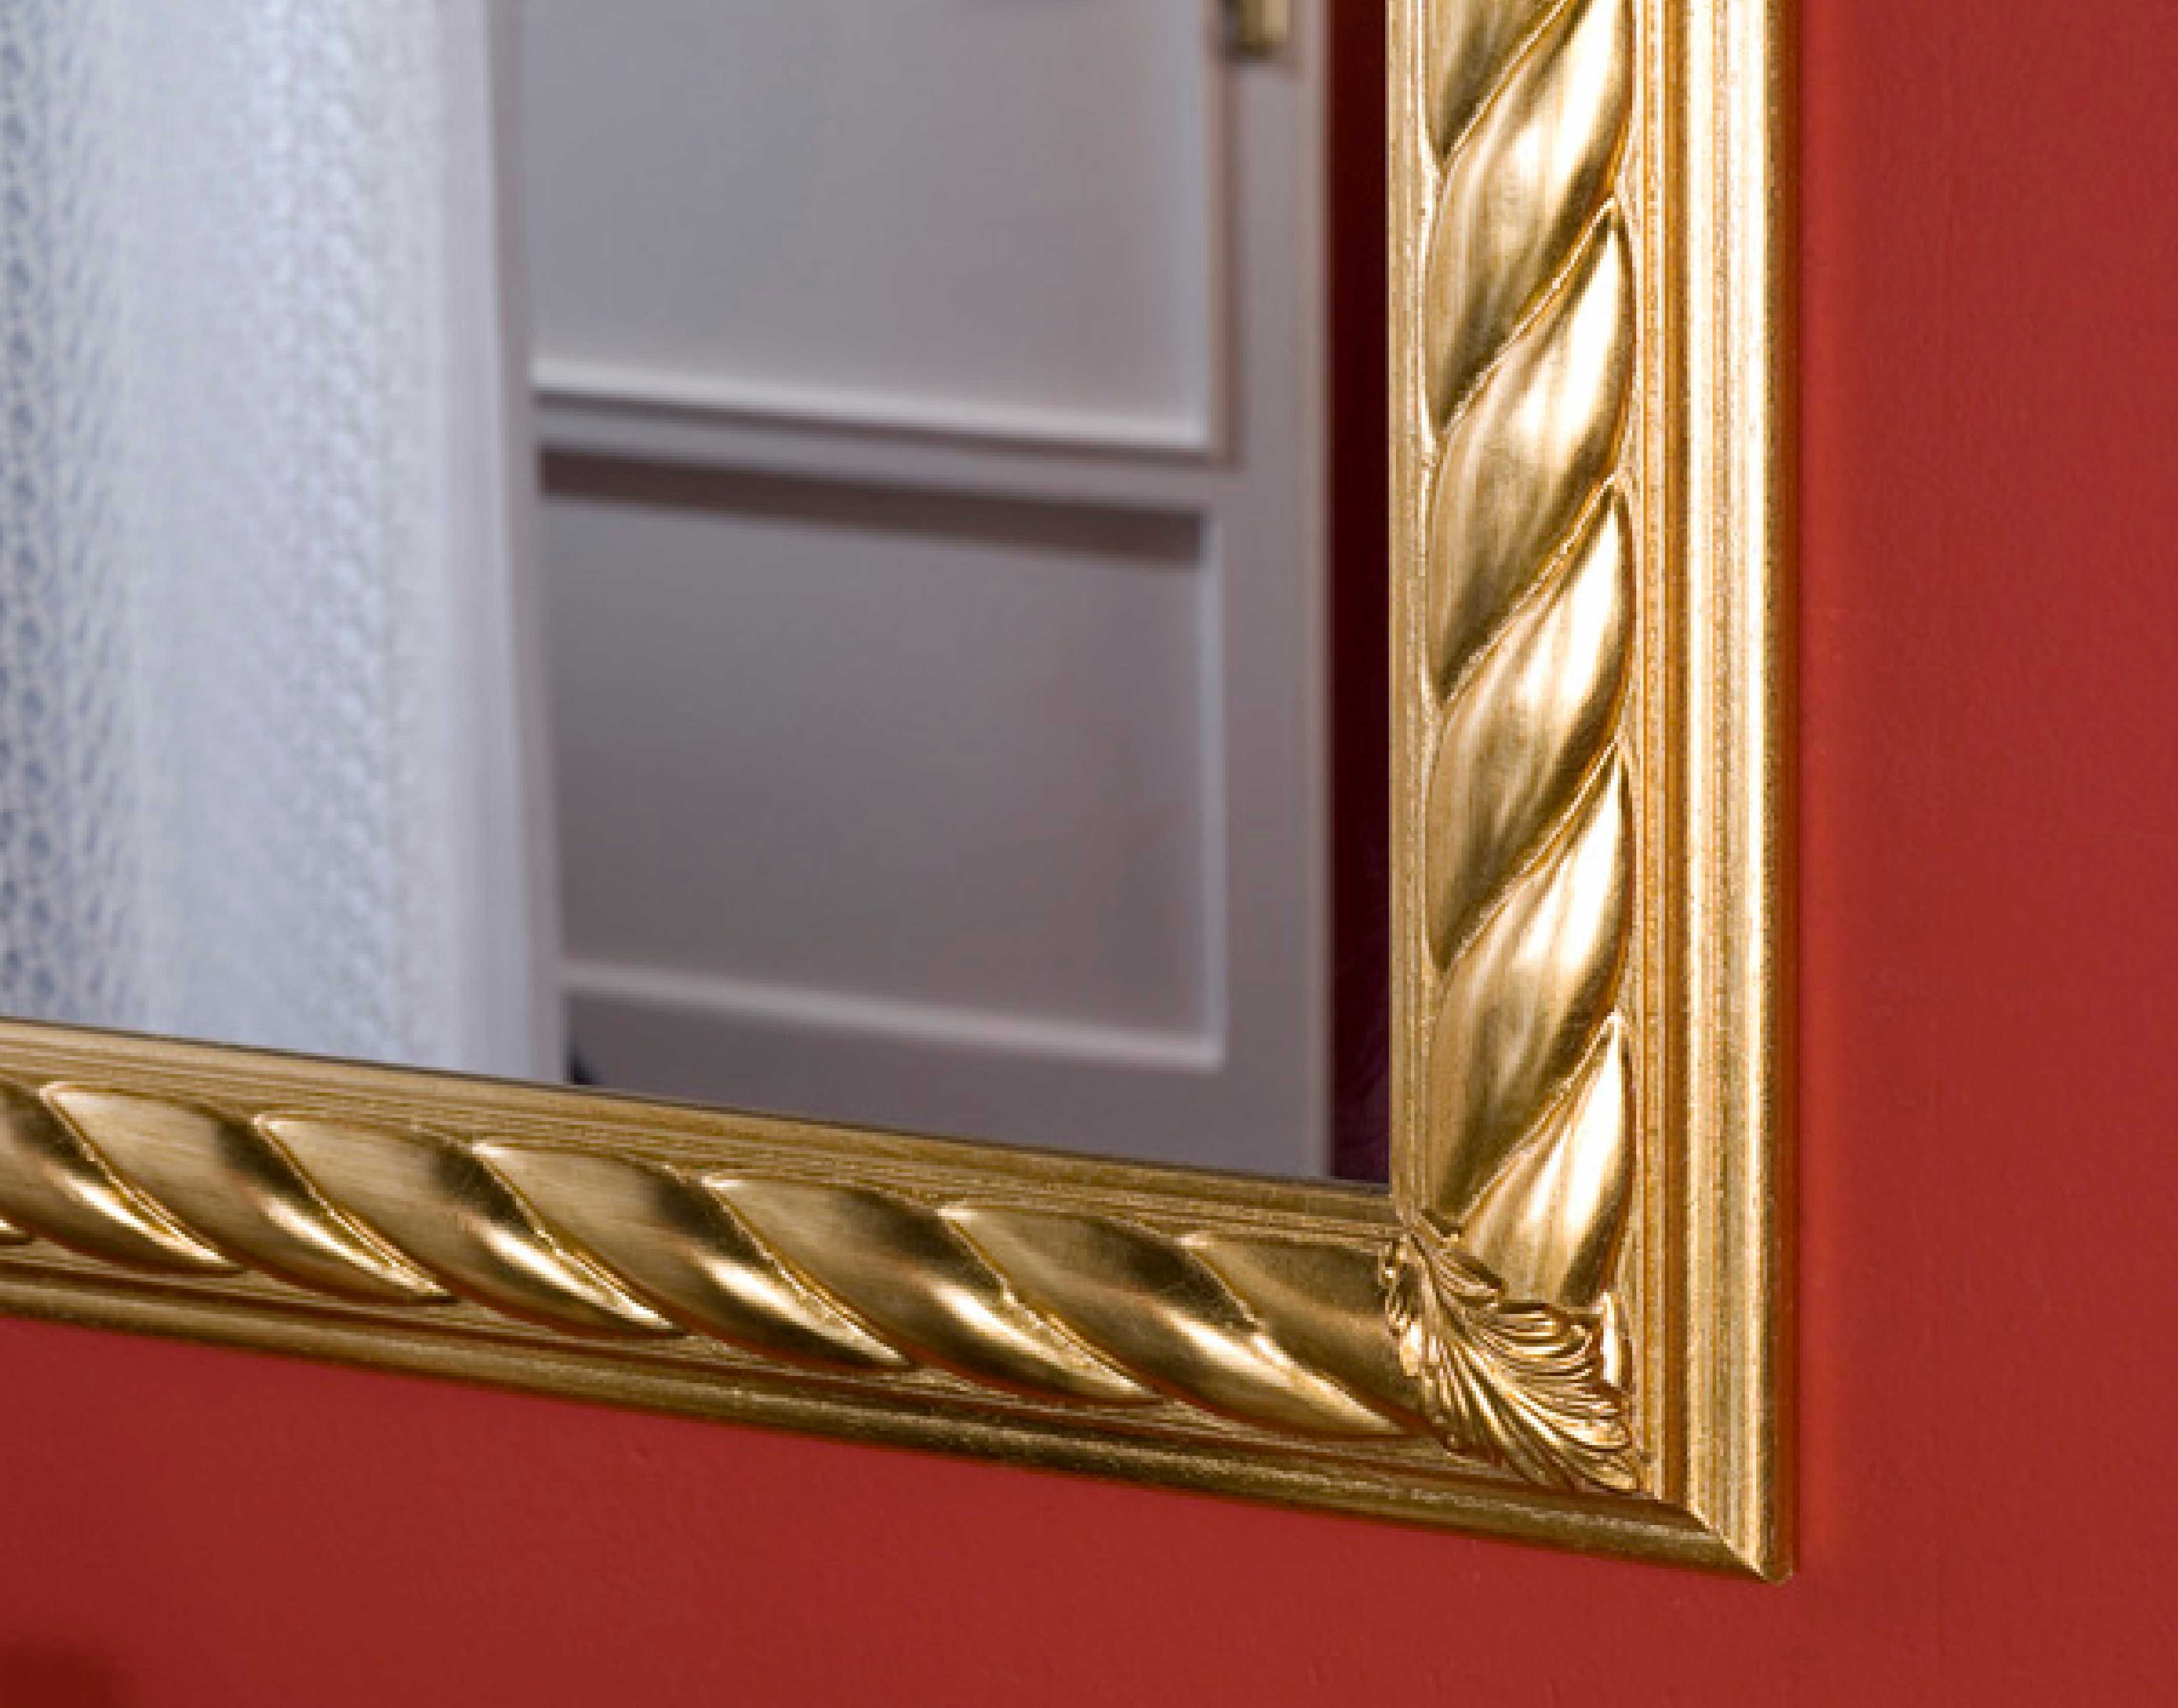 Wandspiegel Modell Ravenna, Finishing: Blattgold, Spiegel: Facettenspiegel, Style: klassisch, Teilansicht, Ausschnitt